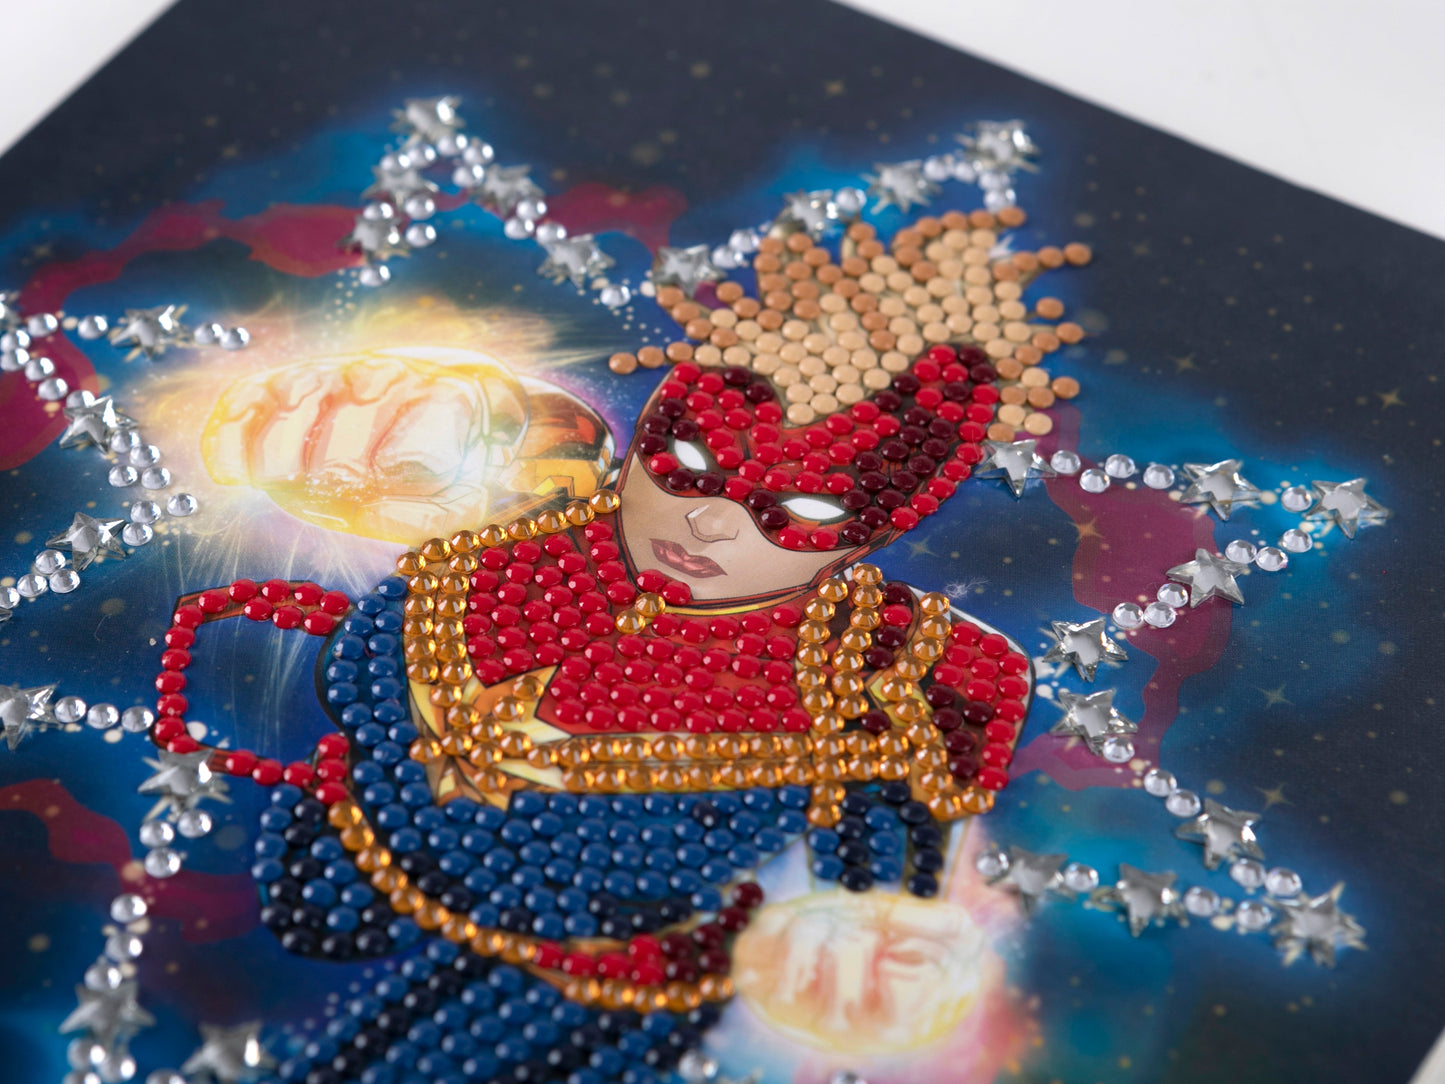 CCK-MCU902: Captain Marvel 18x18cm Crystal Art Card